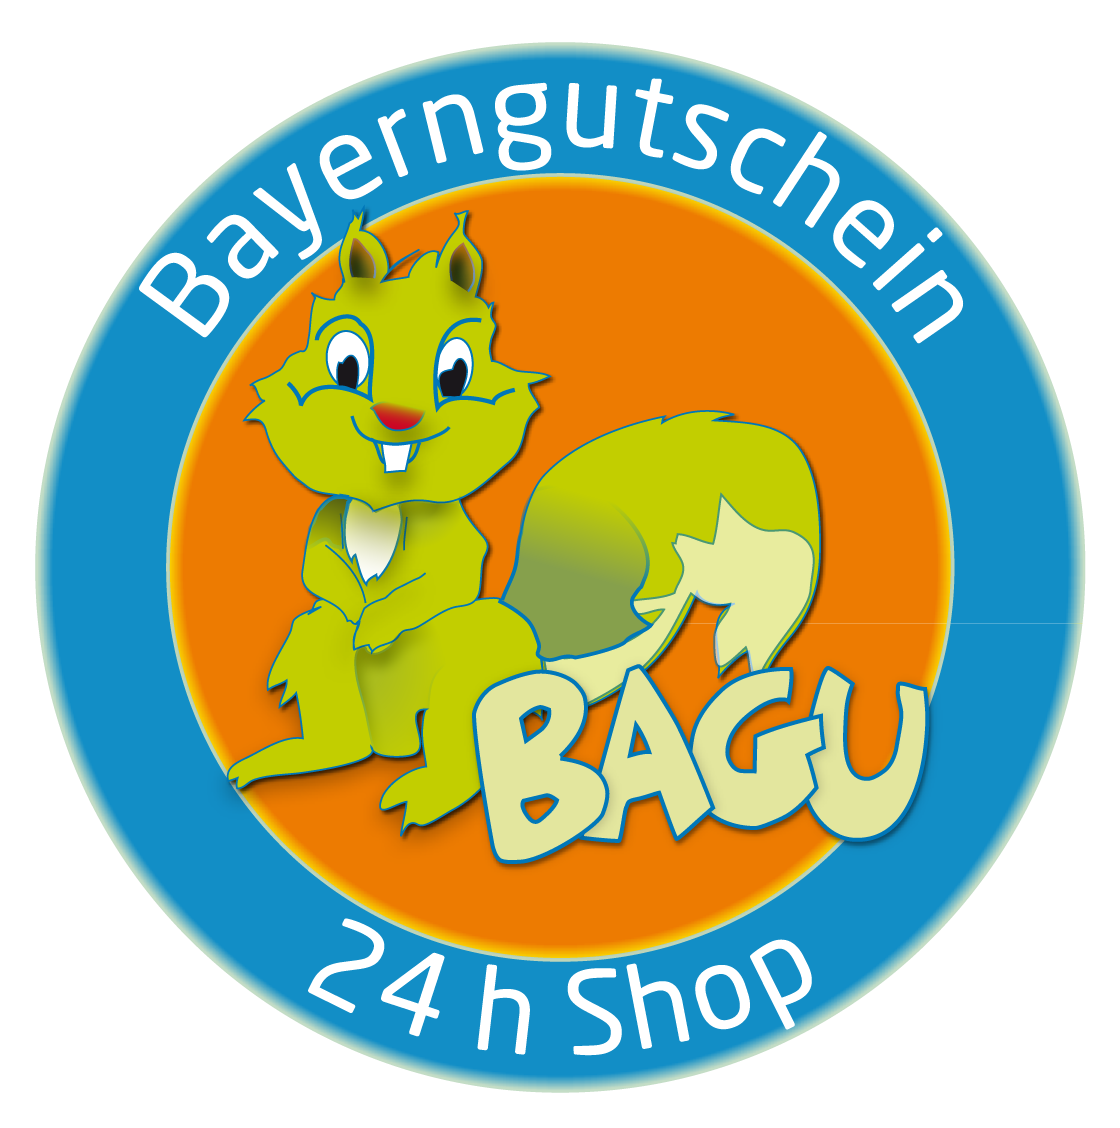 Bayerngutschein 24 h Shop BAGU